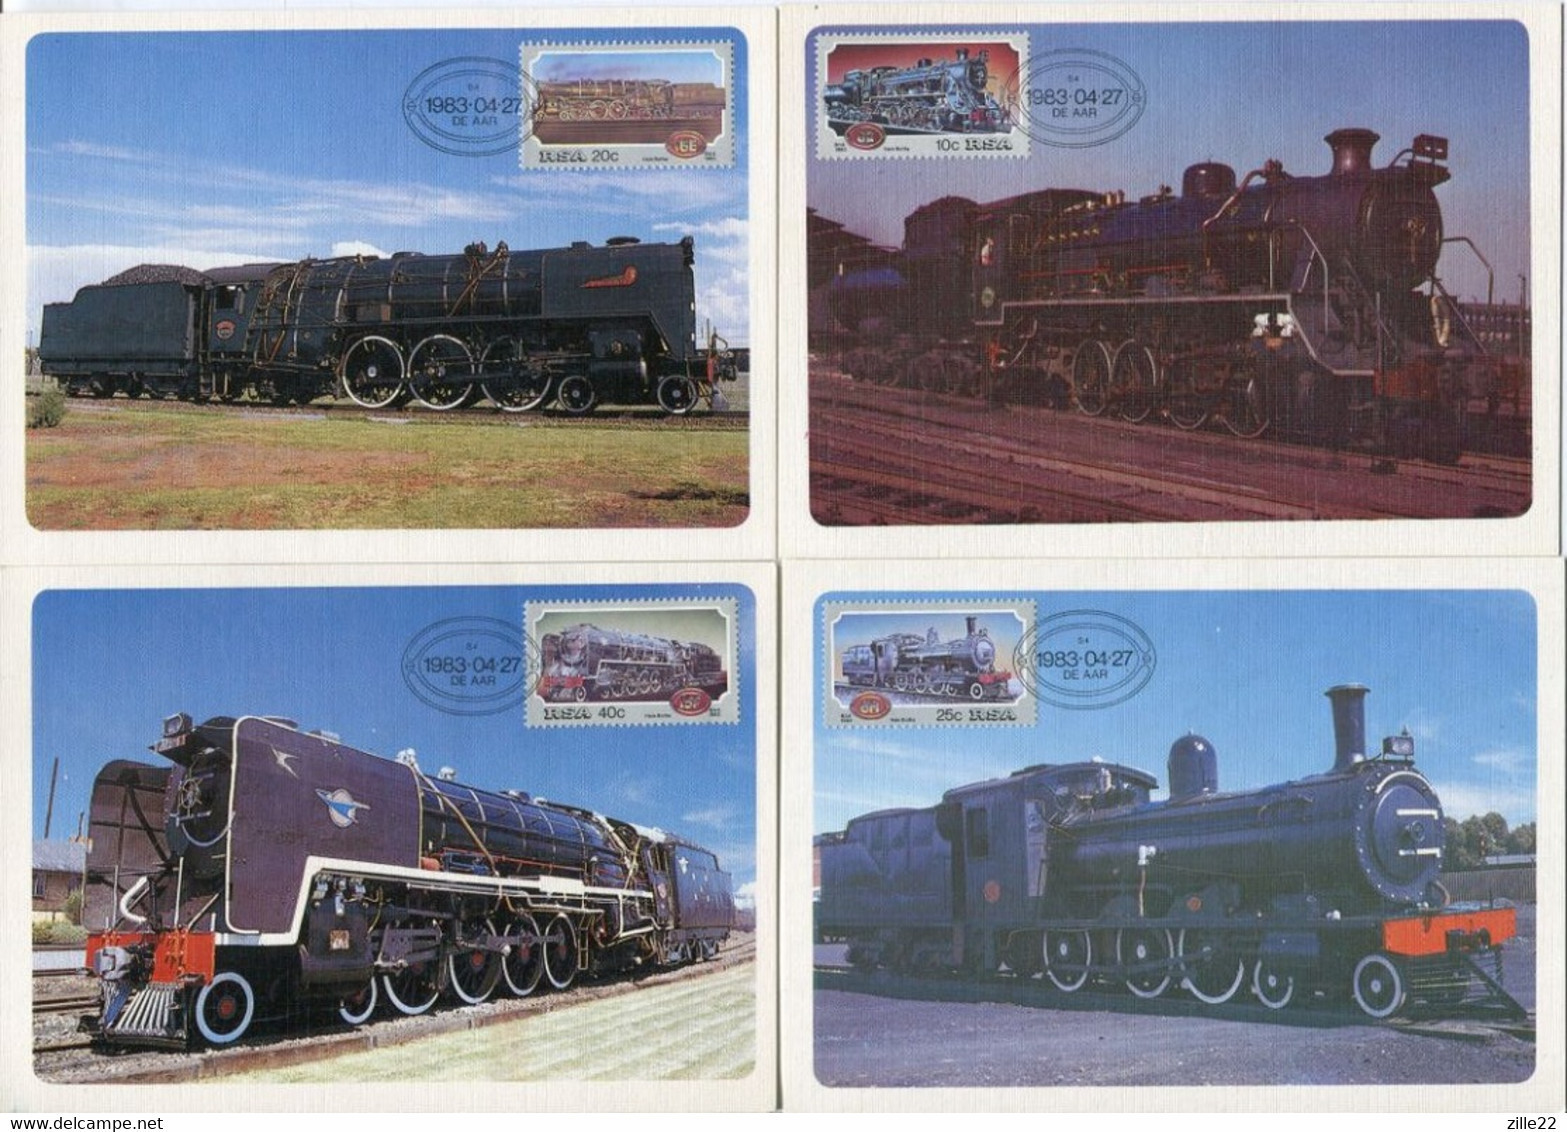 Südafrika South Africa Mi# 630-3 Offizieller Maxikarten-Satz/official Set Maxicards - Transport Railway - FDC